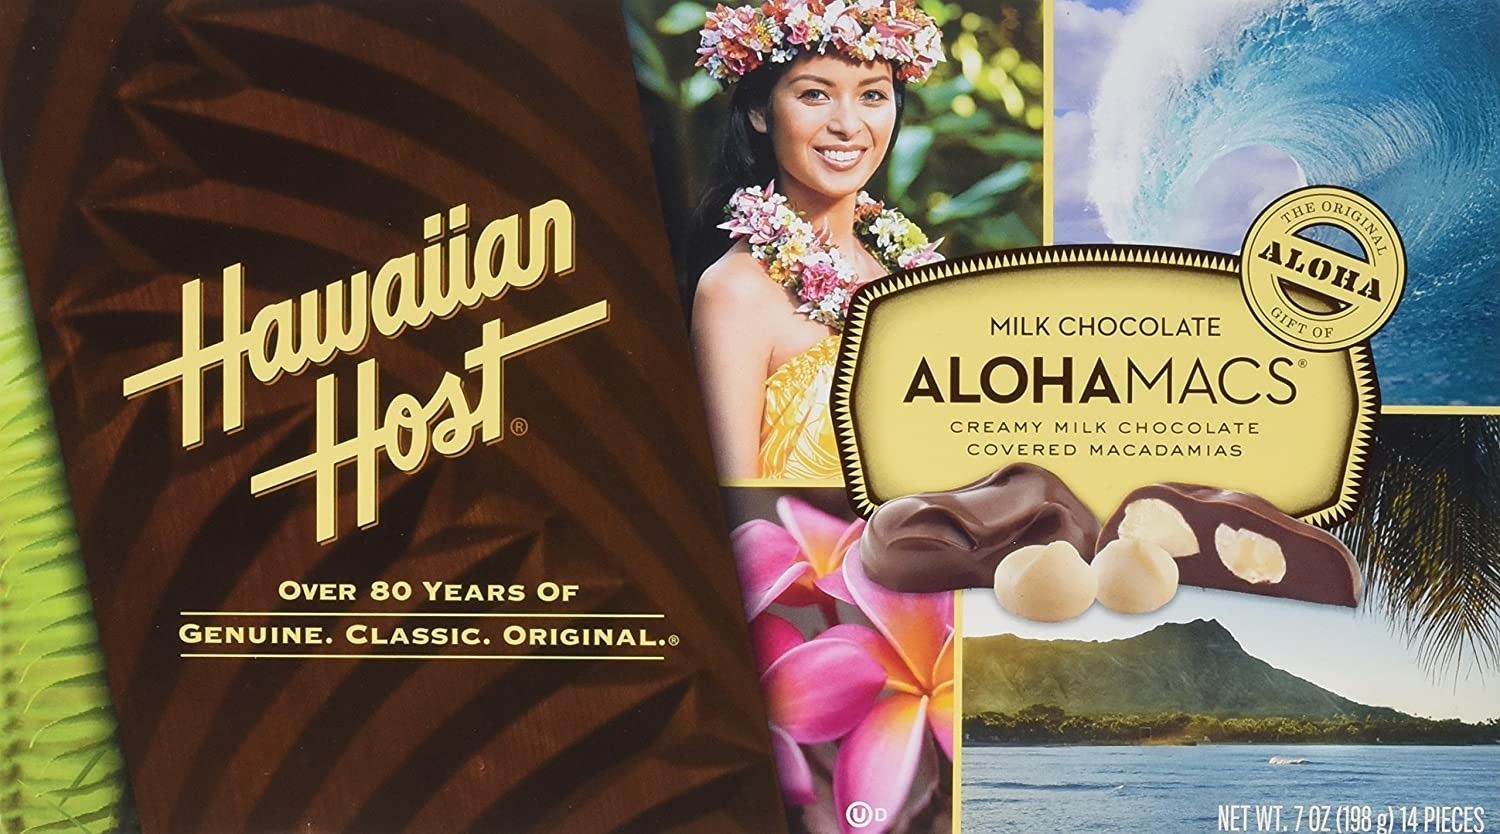 Are Hawaiian Host candies made in Hawaii?